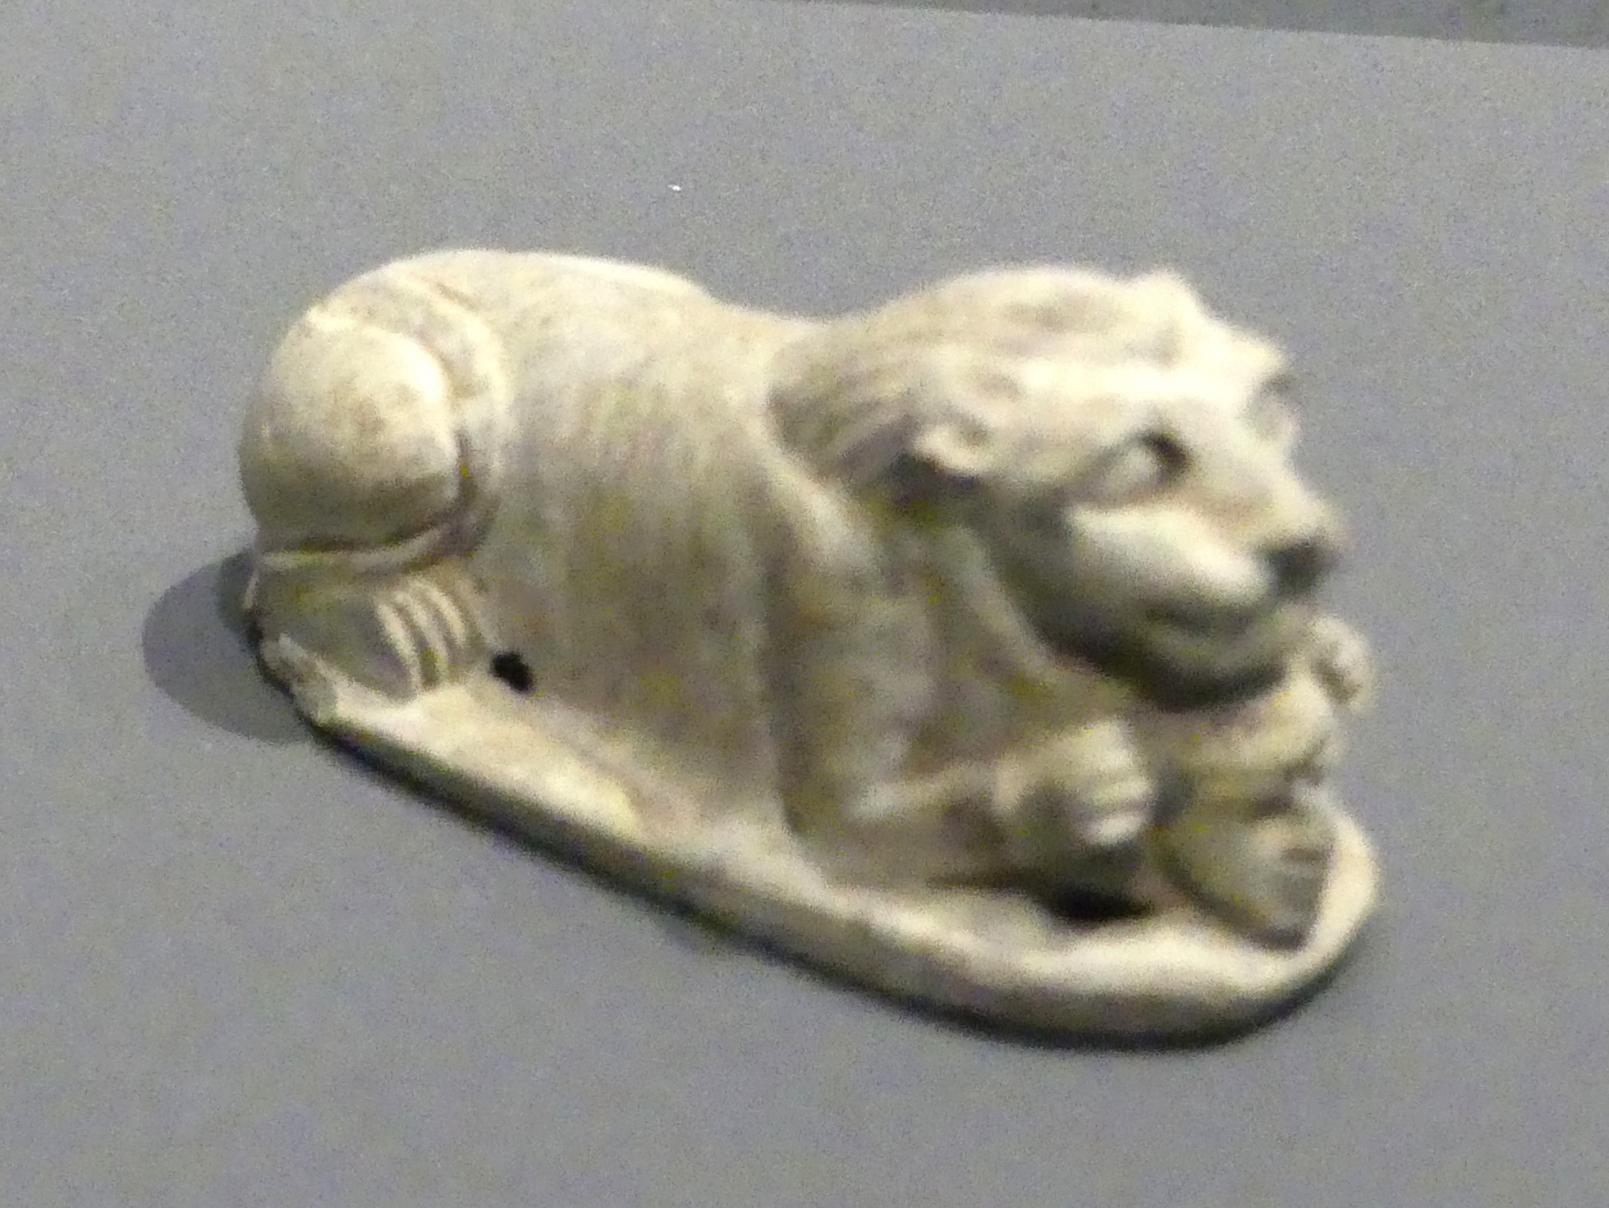 Statuette eines liegenden Löwen mit dem Kopf eines Gefangenen zwischen den Tatzen, Neues Reich, 953 - 887 v. Chr., 1250 - 1100 v. Chr., Bild 1/3